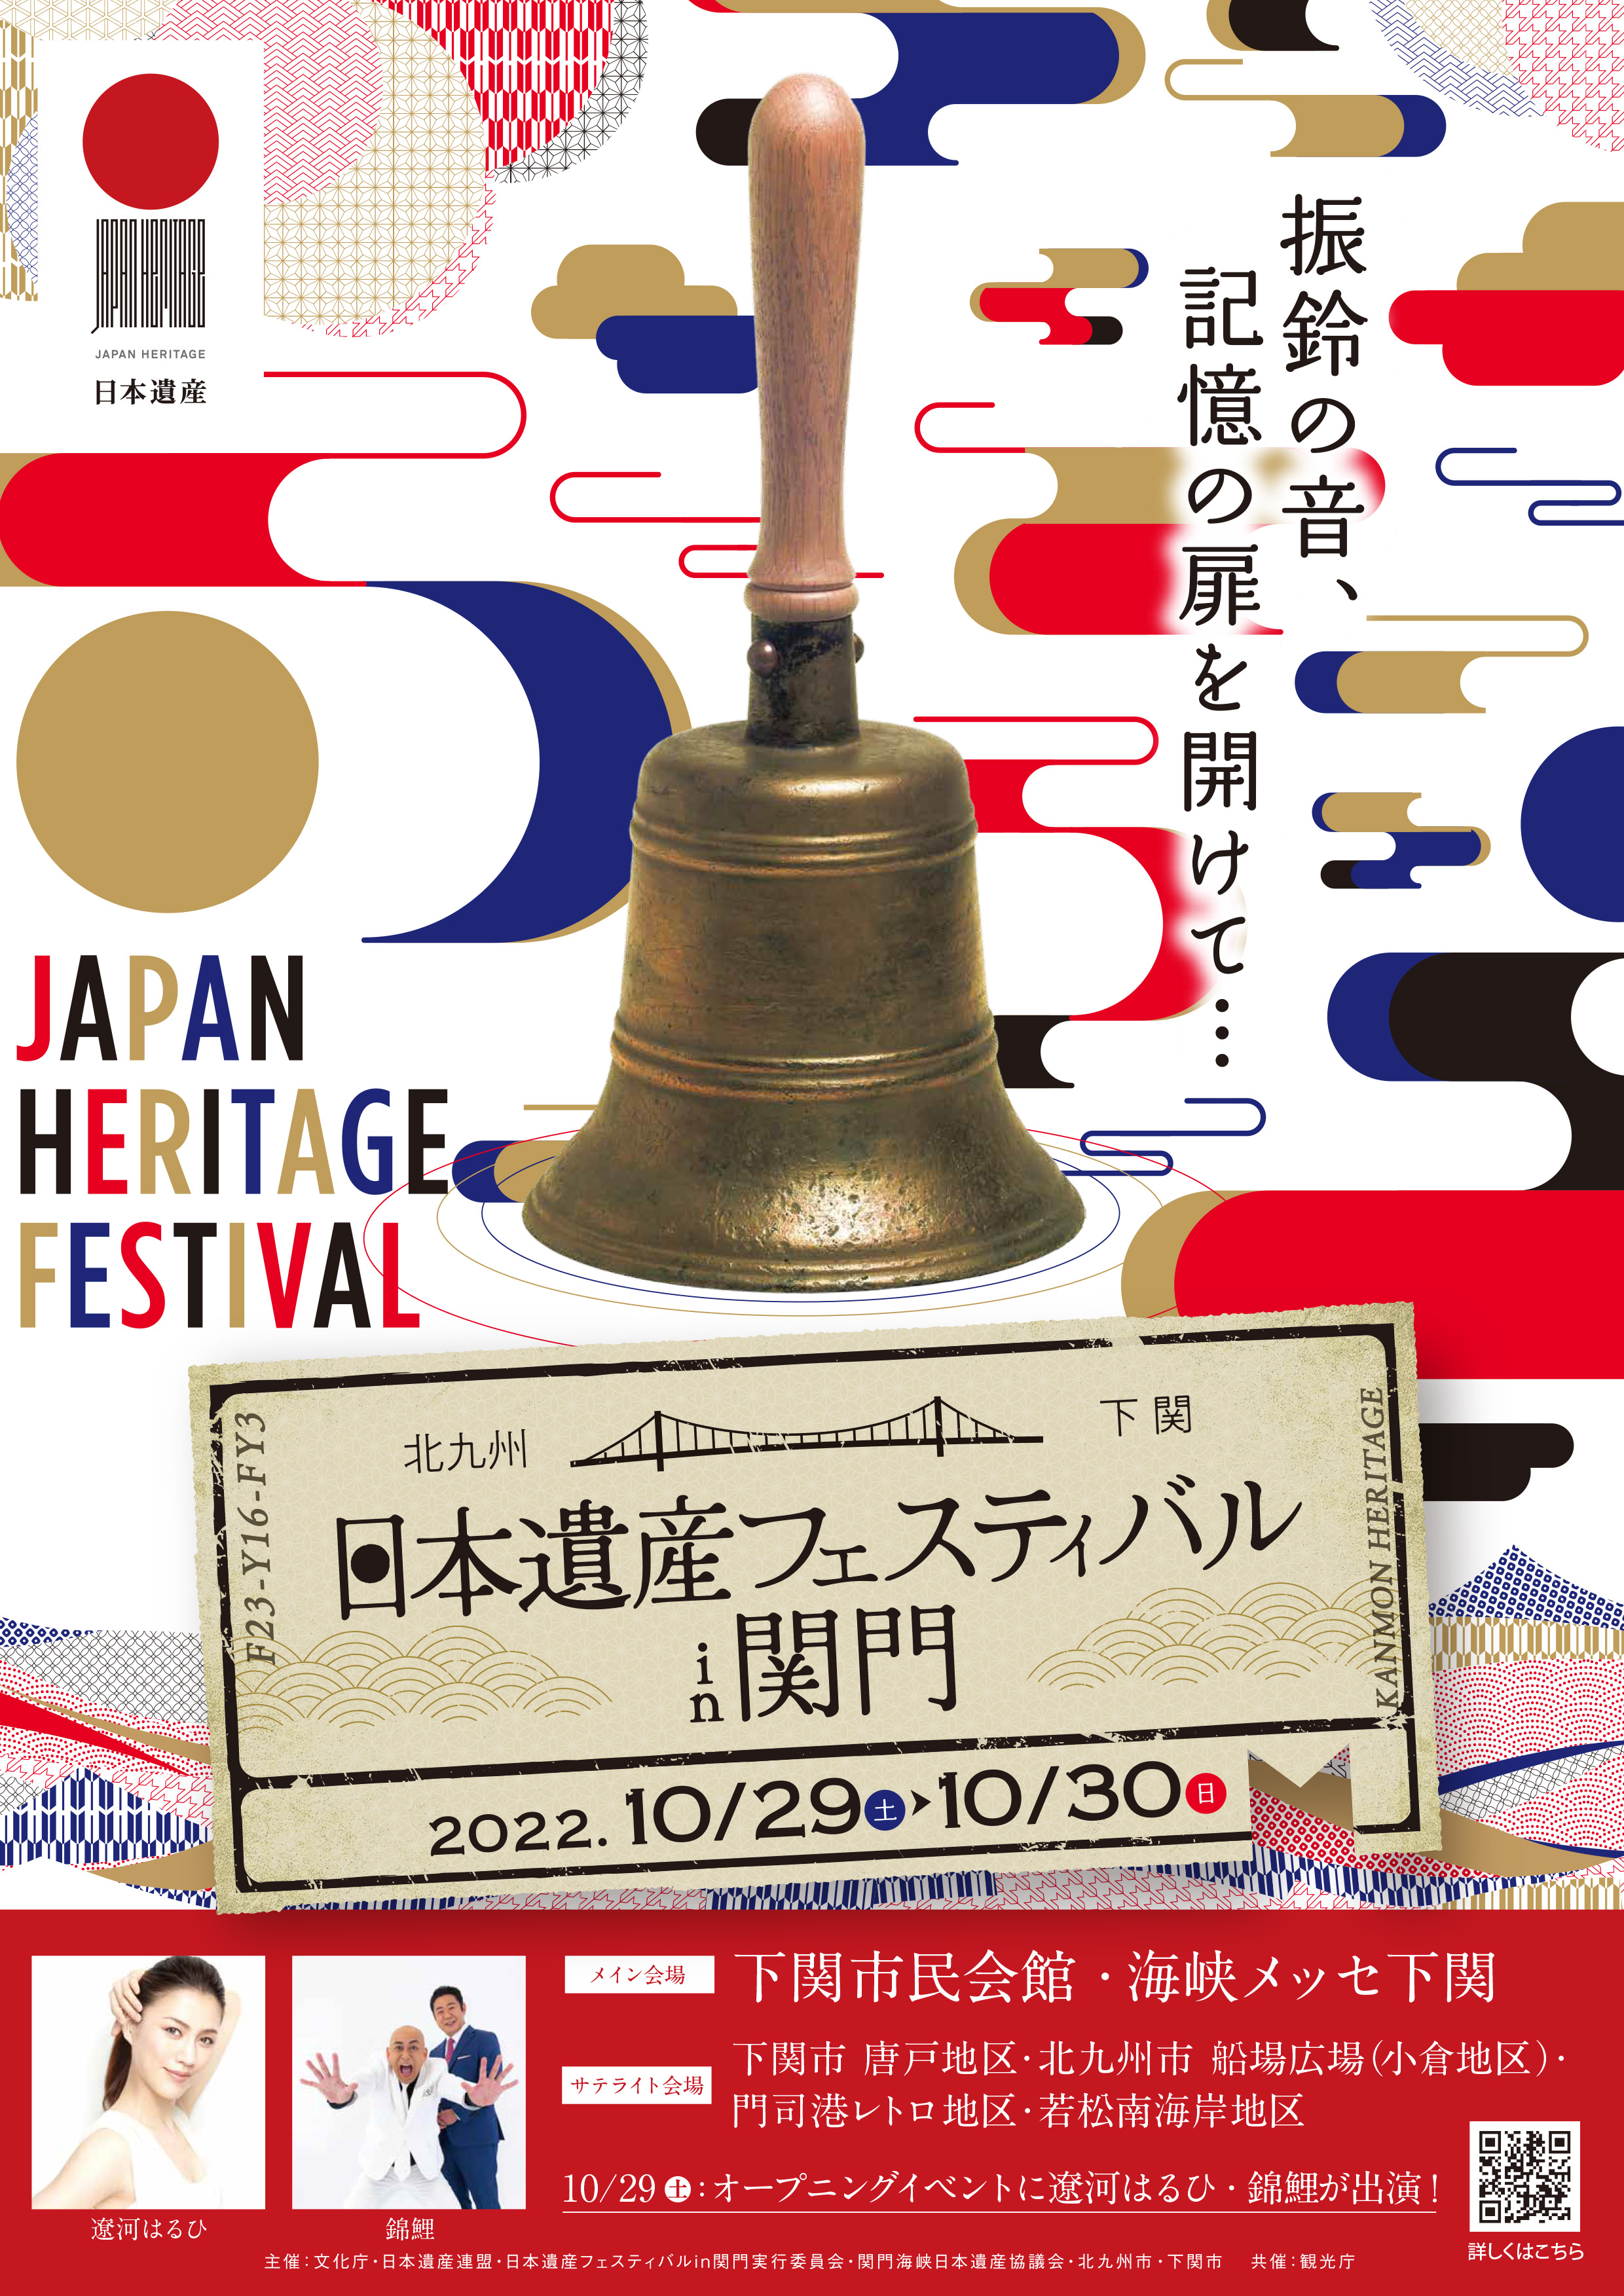 日本遺産フェスティバルin関門の開催